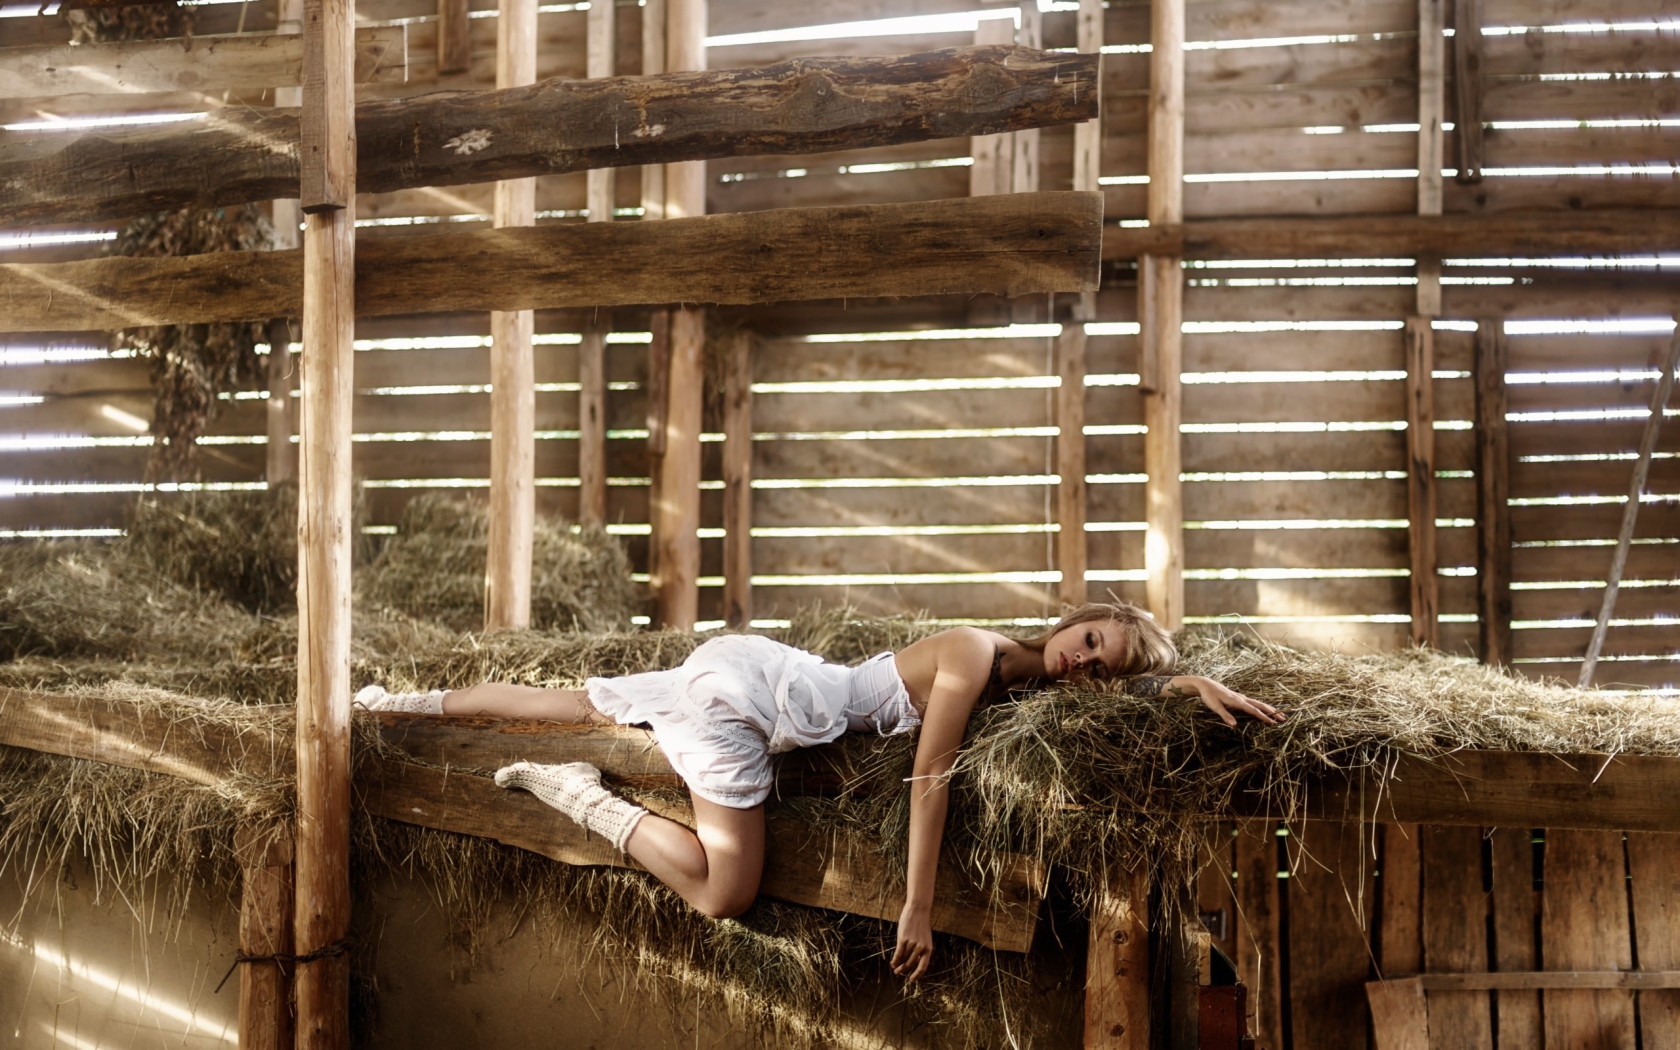 Girl sleeping on the hay in the barn